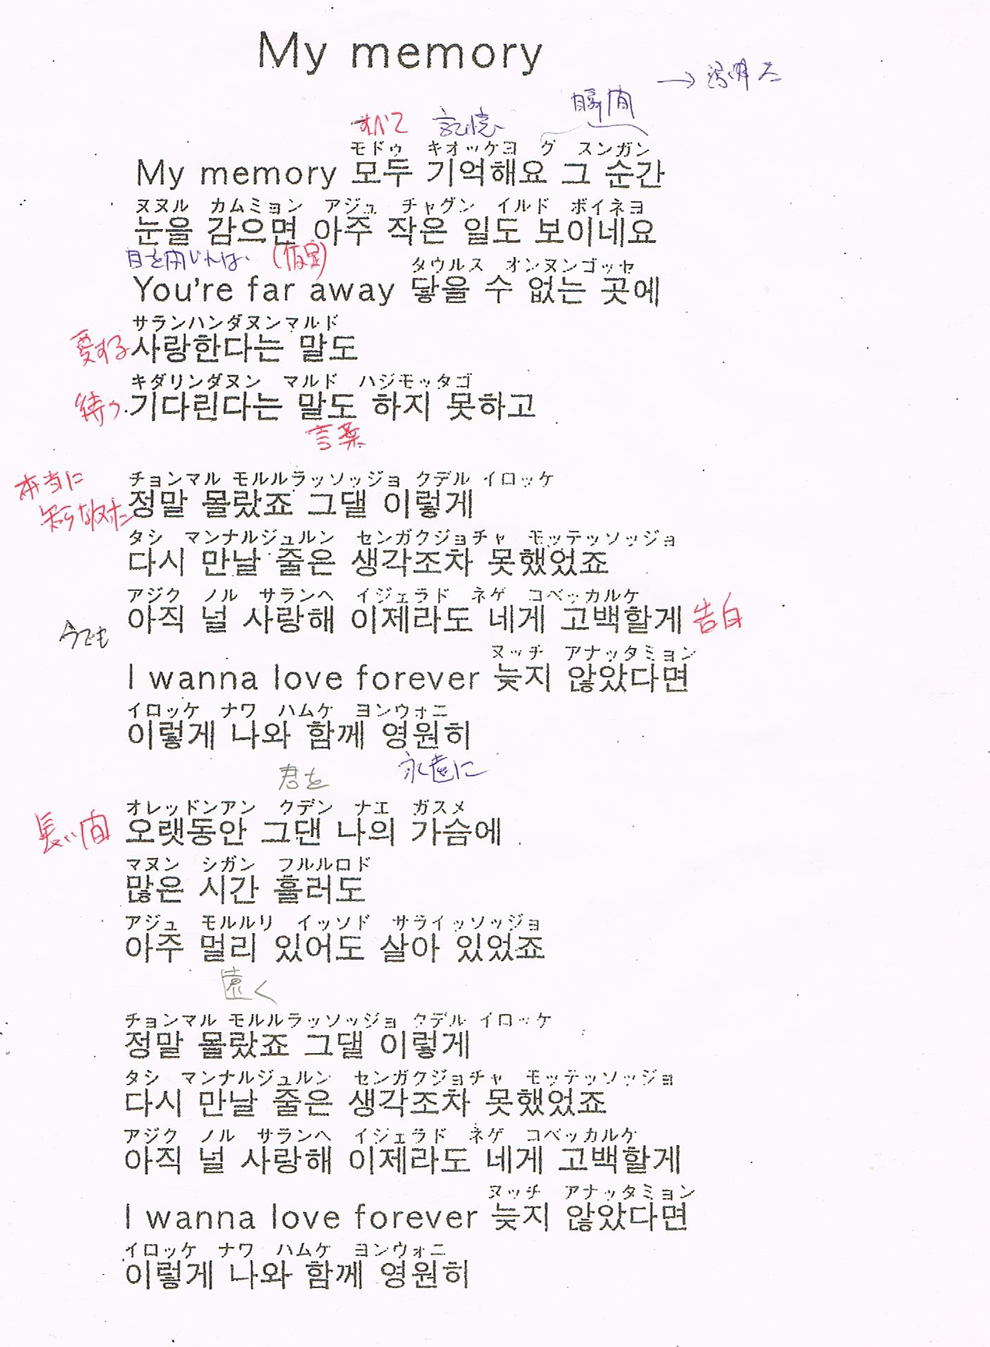 冬のソナタ 挿入歌 My Memory を 韓国語でカラオケしたい 世界食堂